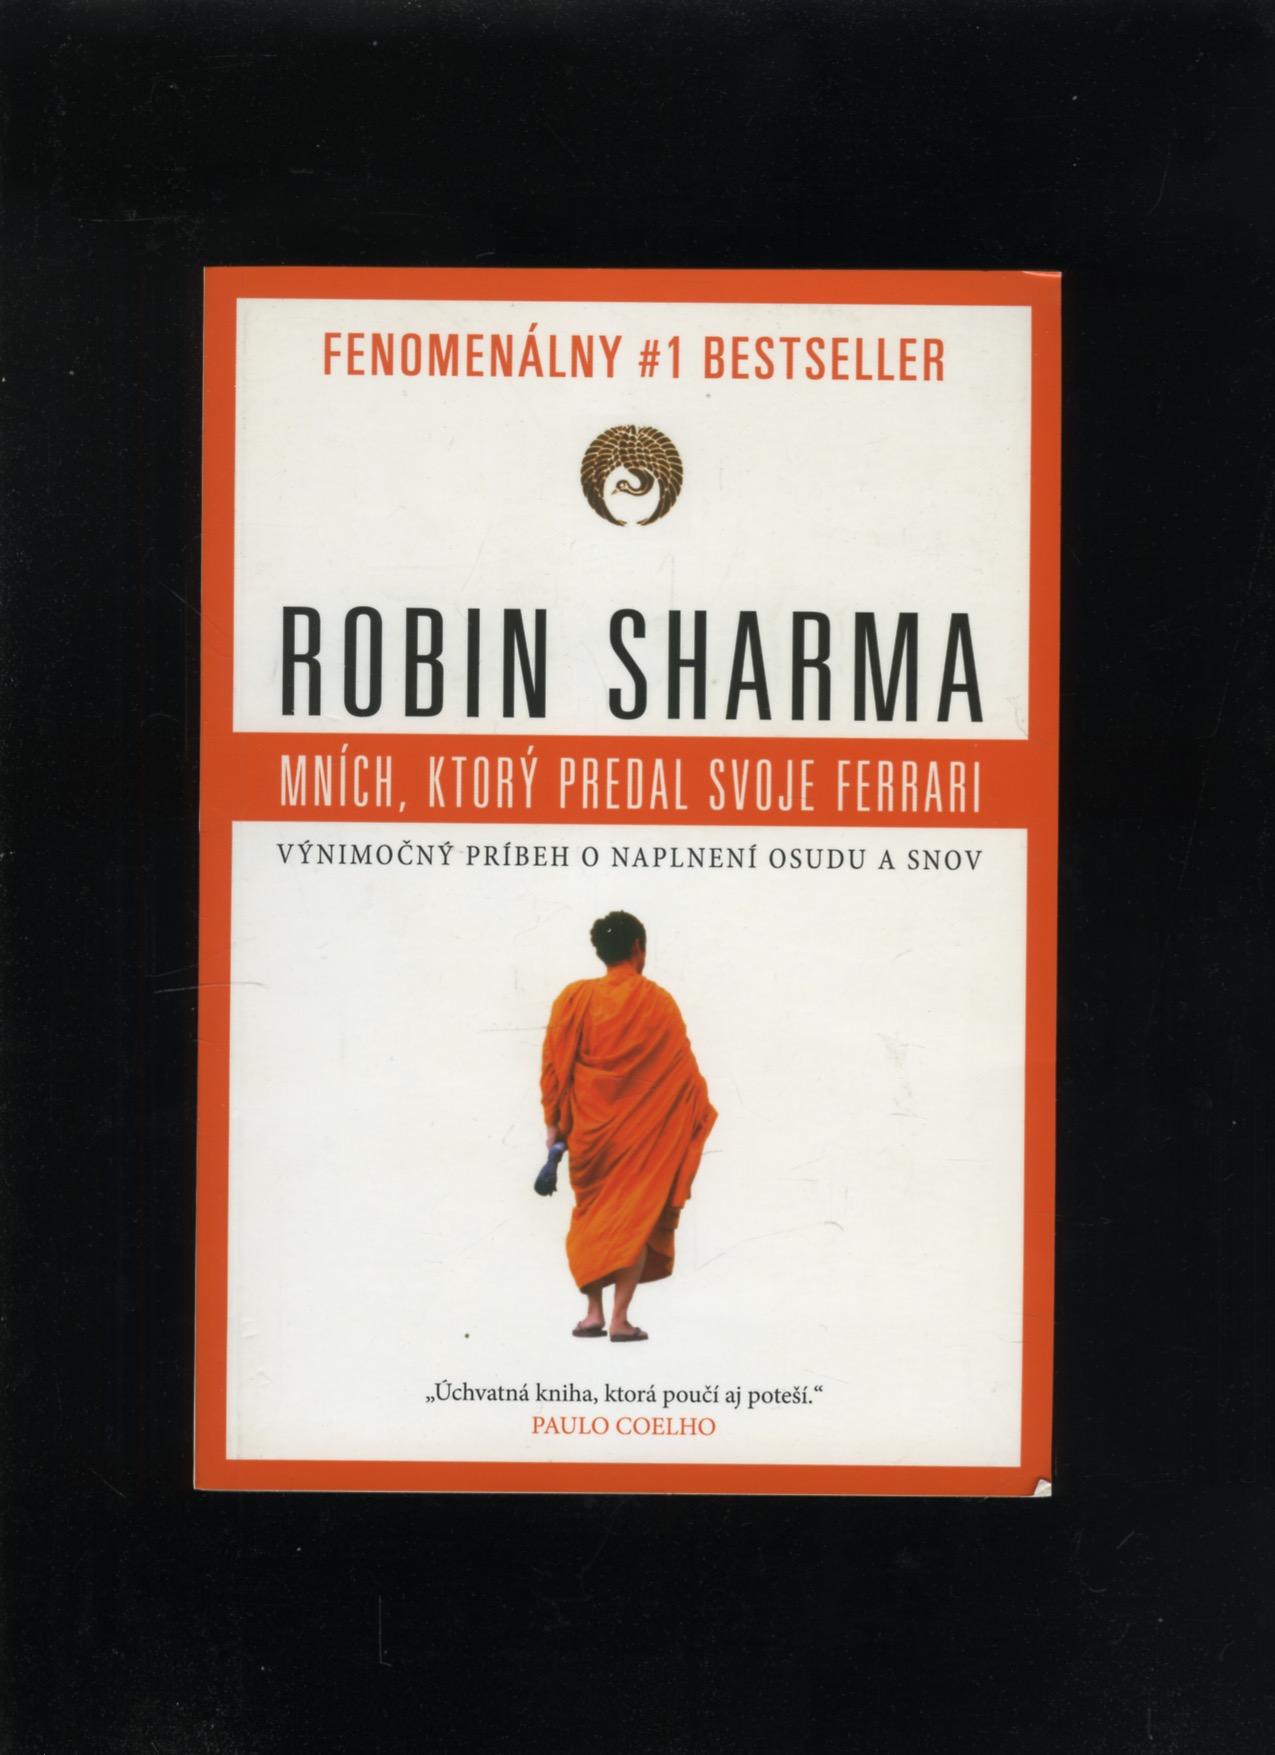 Mních, ktorý predal svoje Ferrari (Robin Sharma)